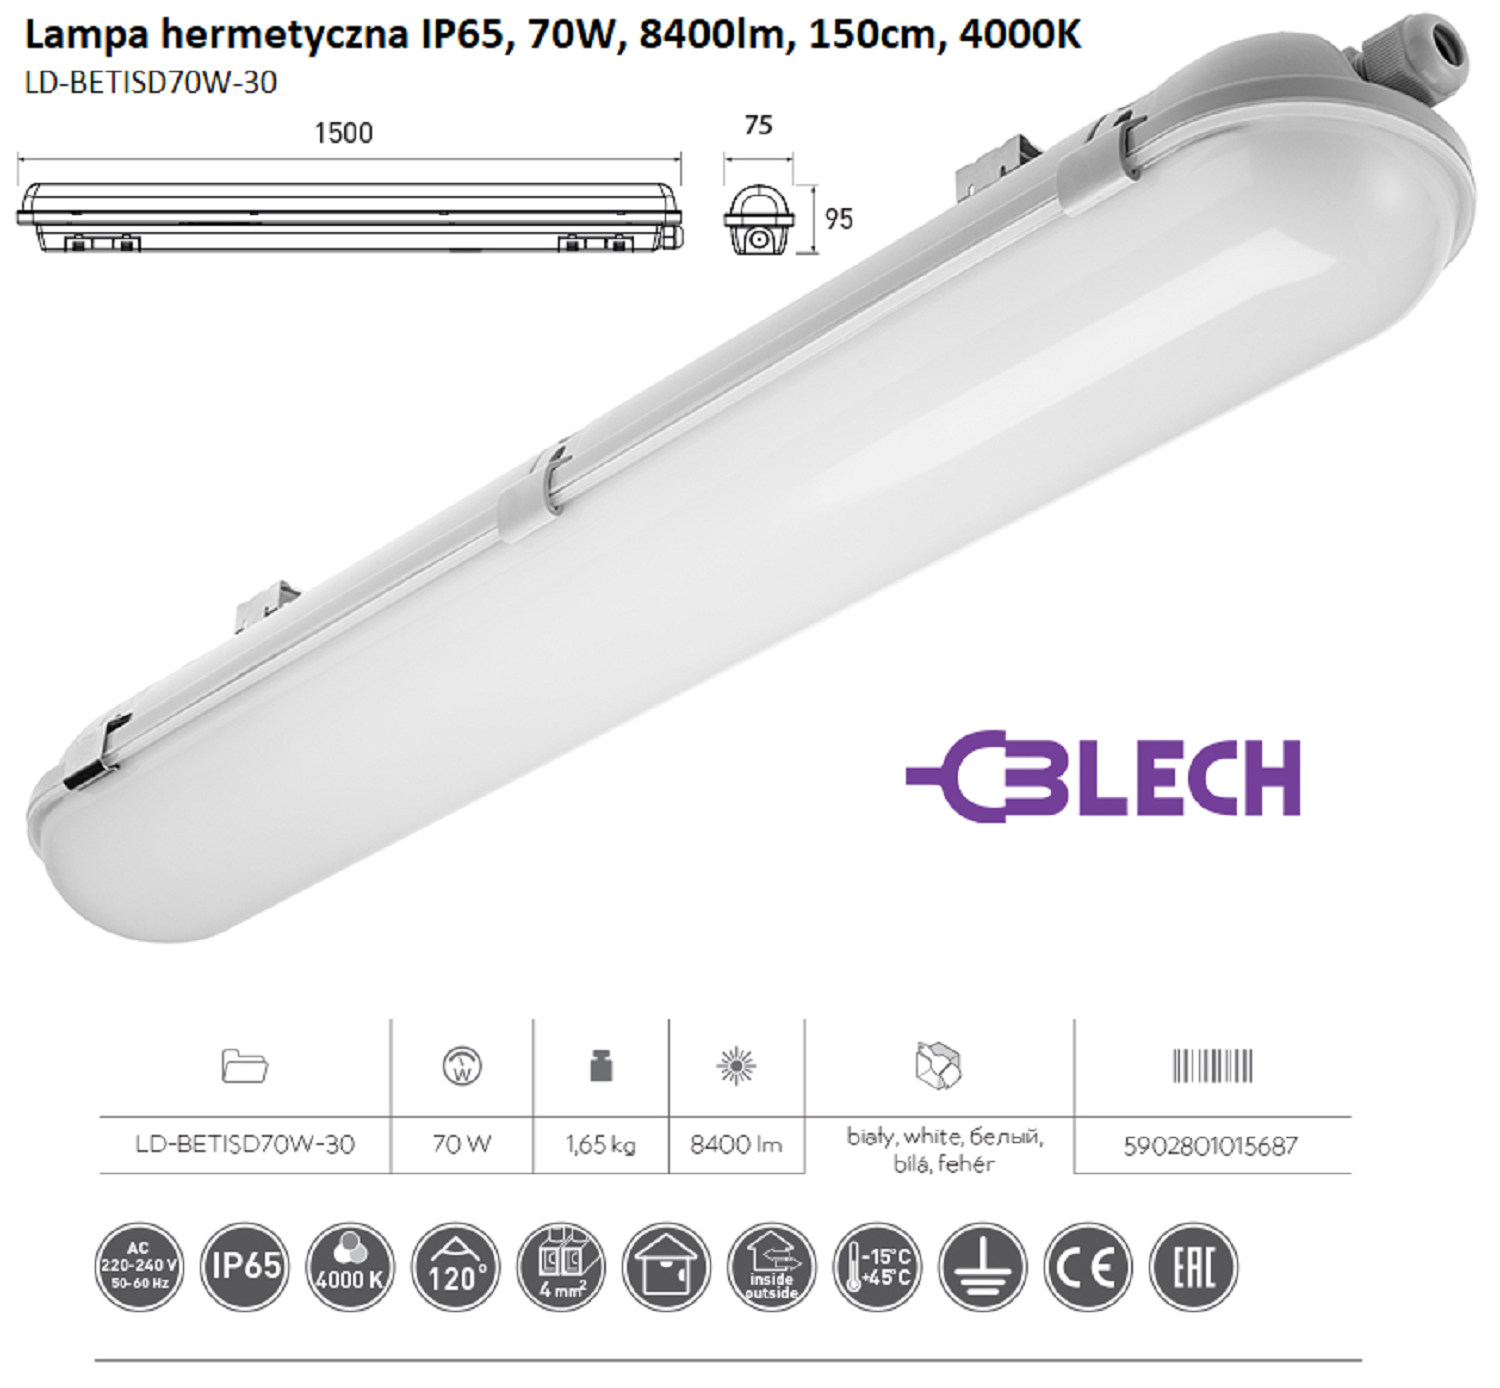 Lampa liniowa hermetyczna LED IP65, 70W, 8400lm, 150cm, 4000K